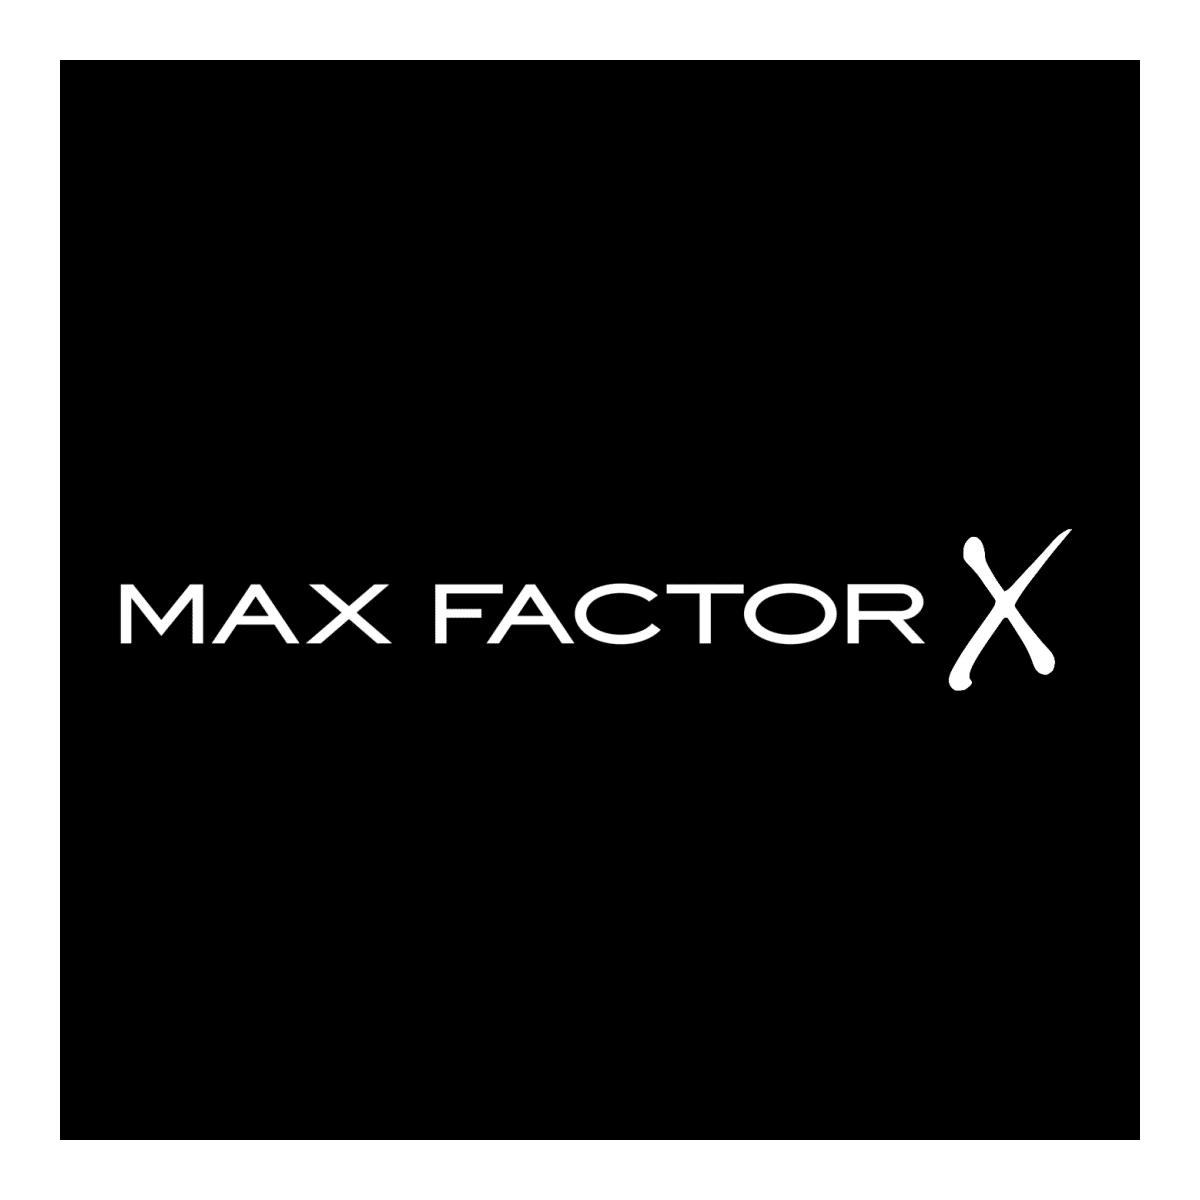 Max factor